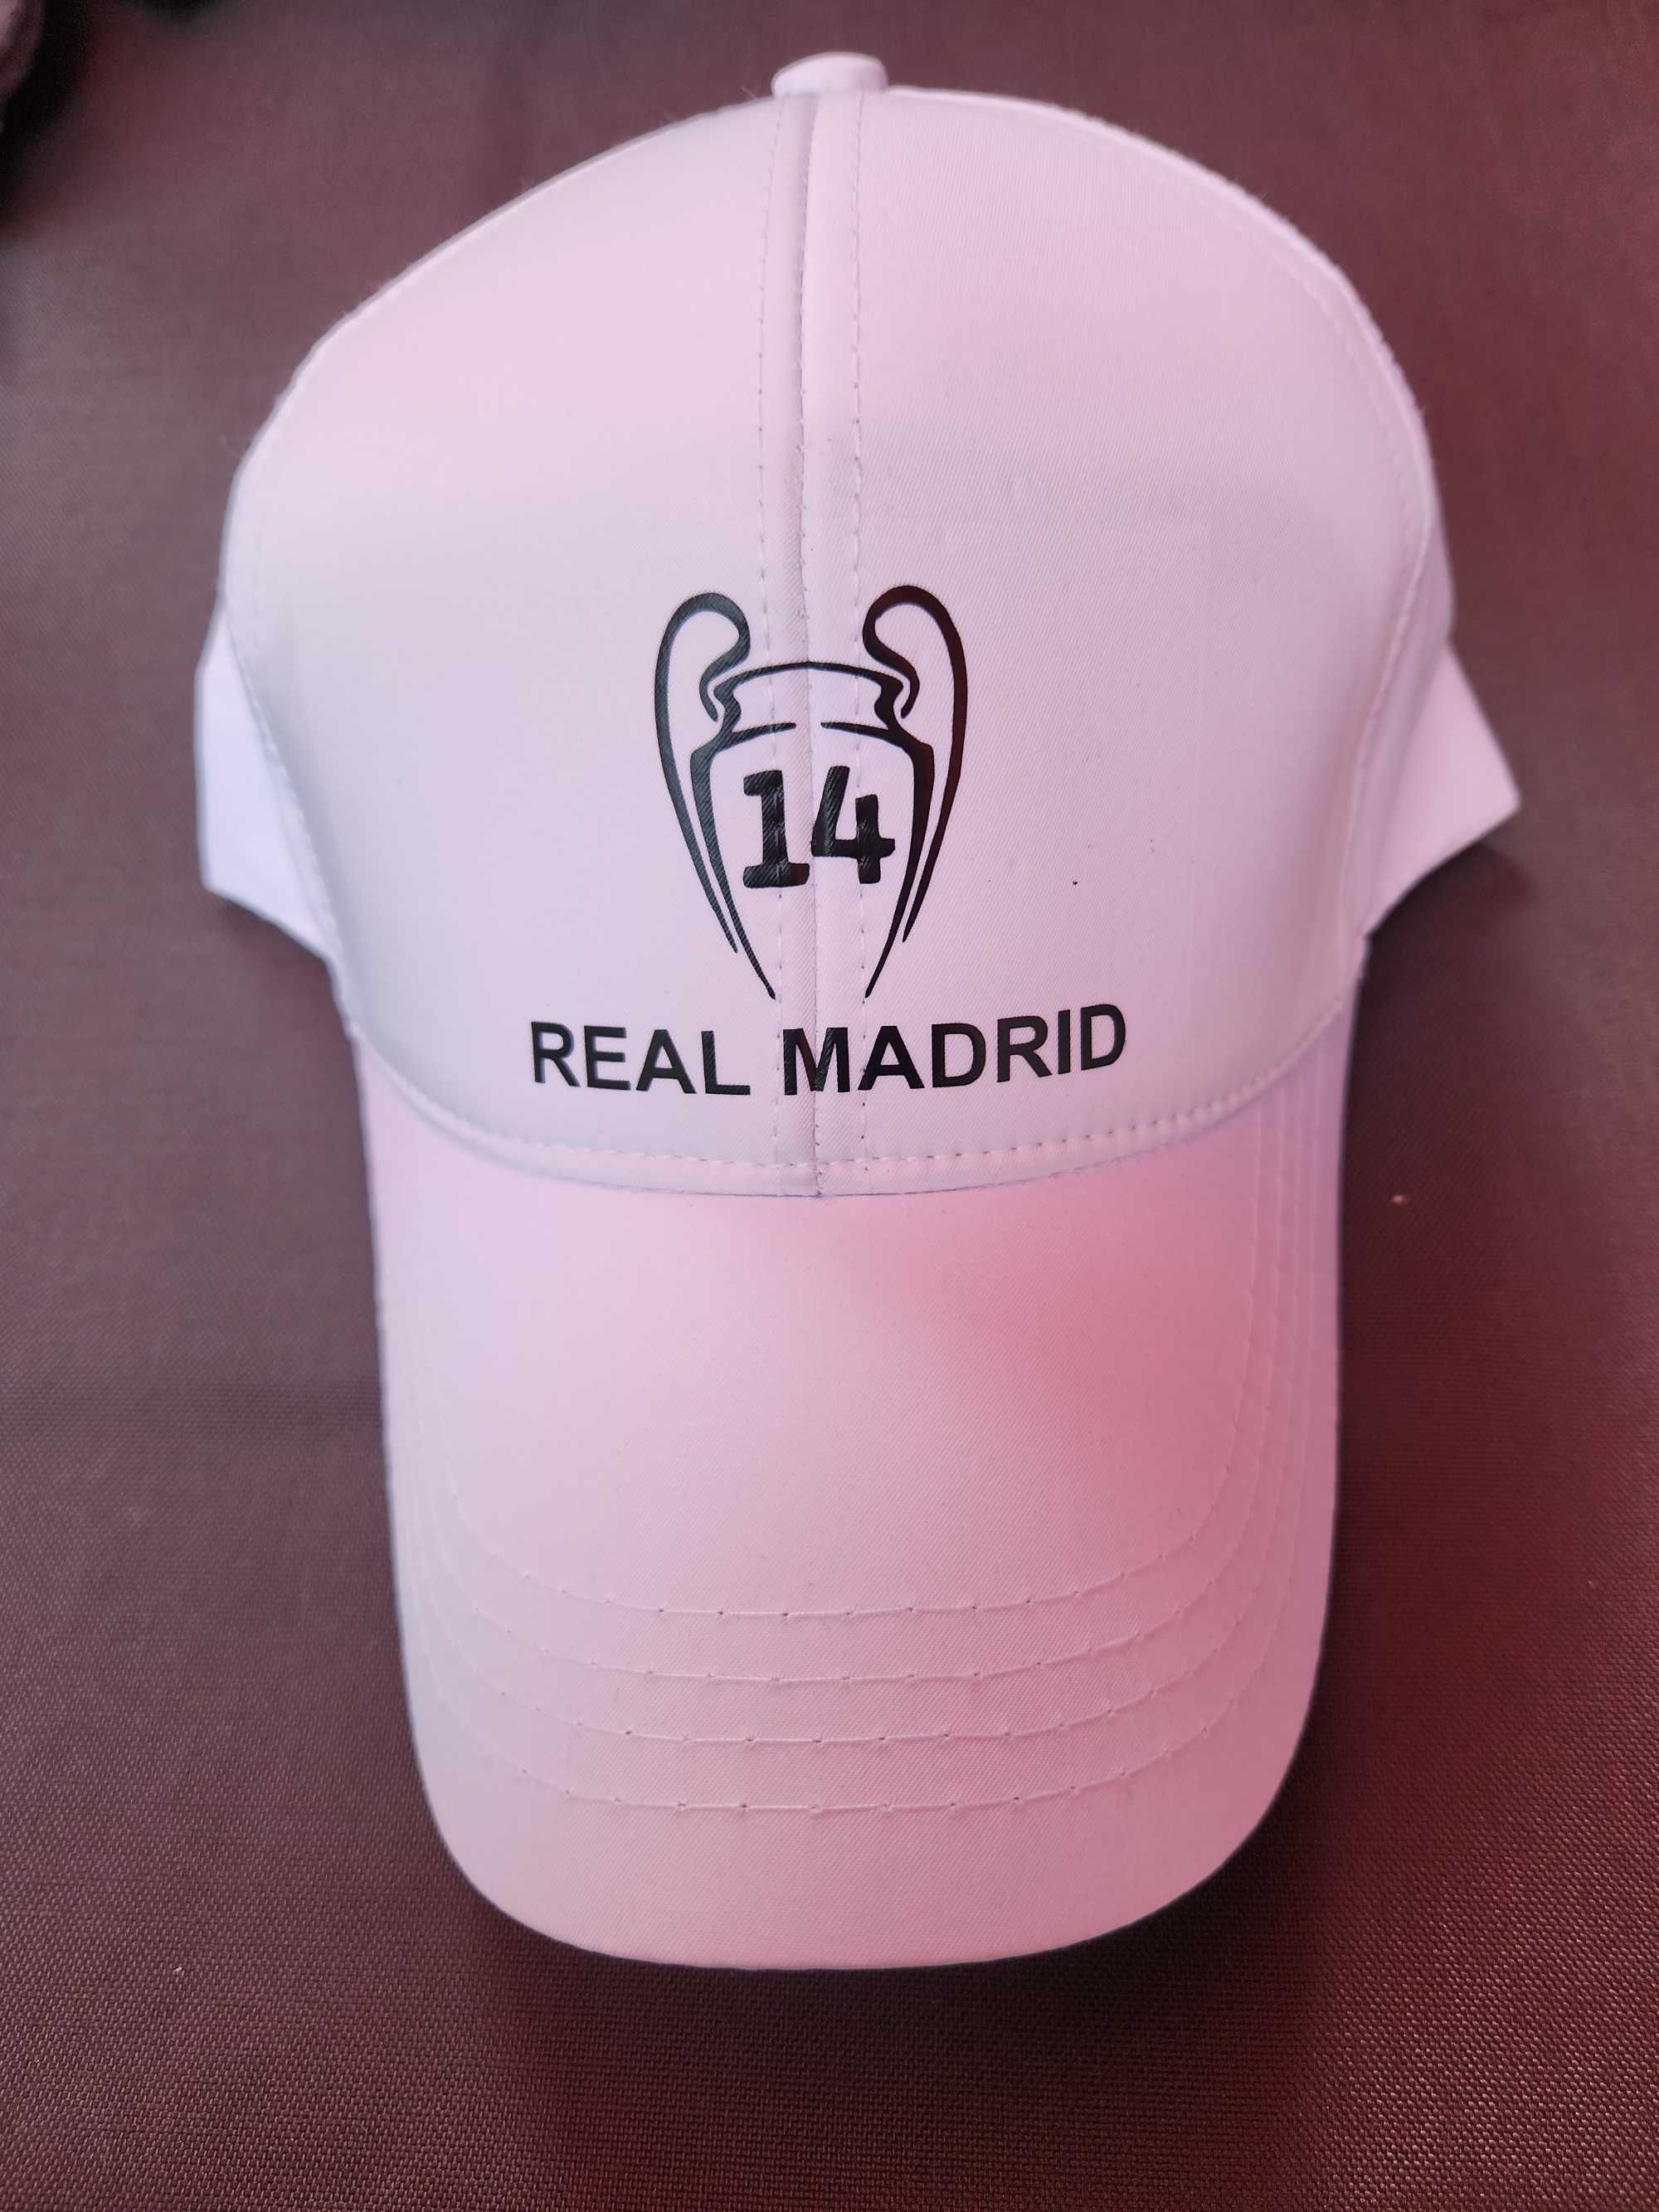 Бяла Шапка Реал Мадрид Шампионска Лига 14 Champions leguea Real Madrid